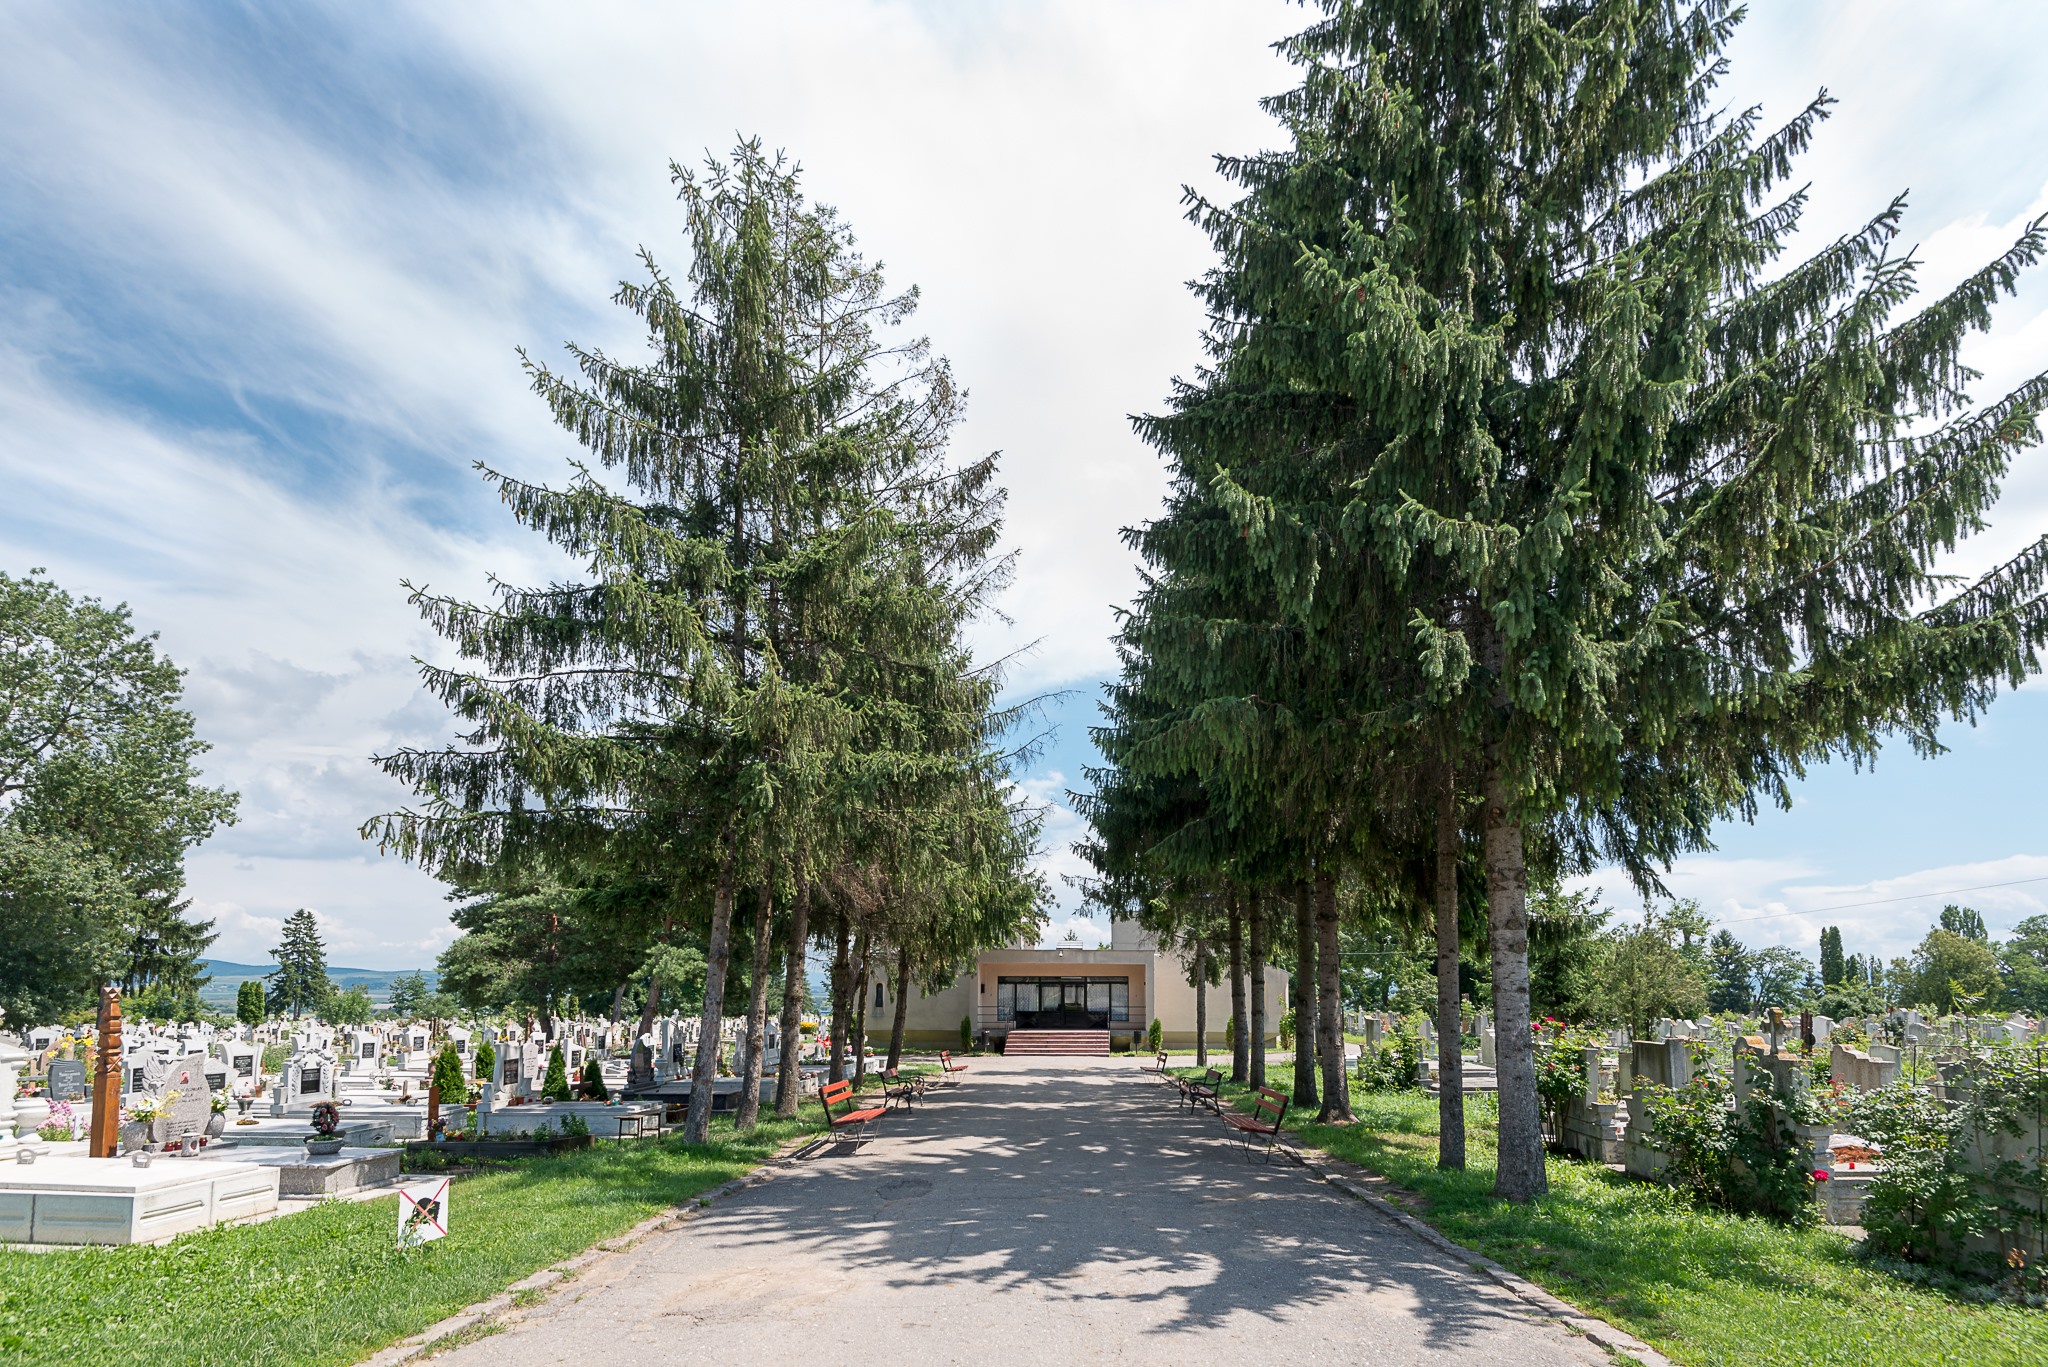 Cimitirul comun va fi deschis inclusiv în weekendul de 1 noiembrie